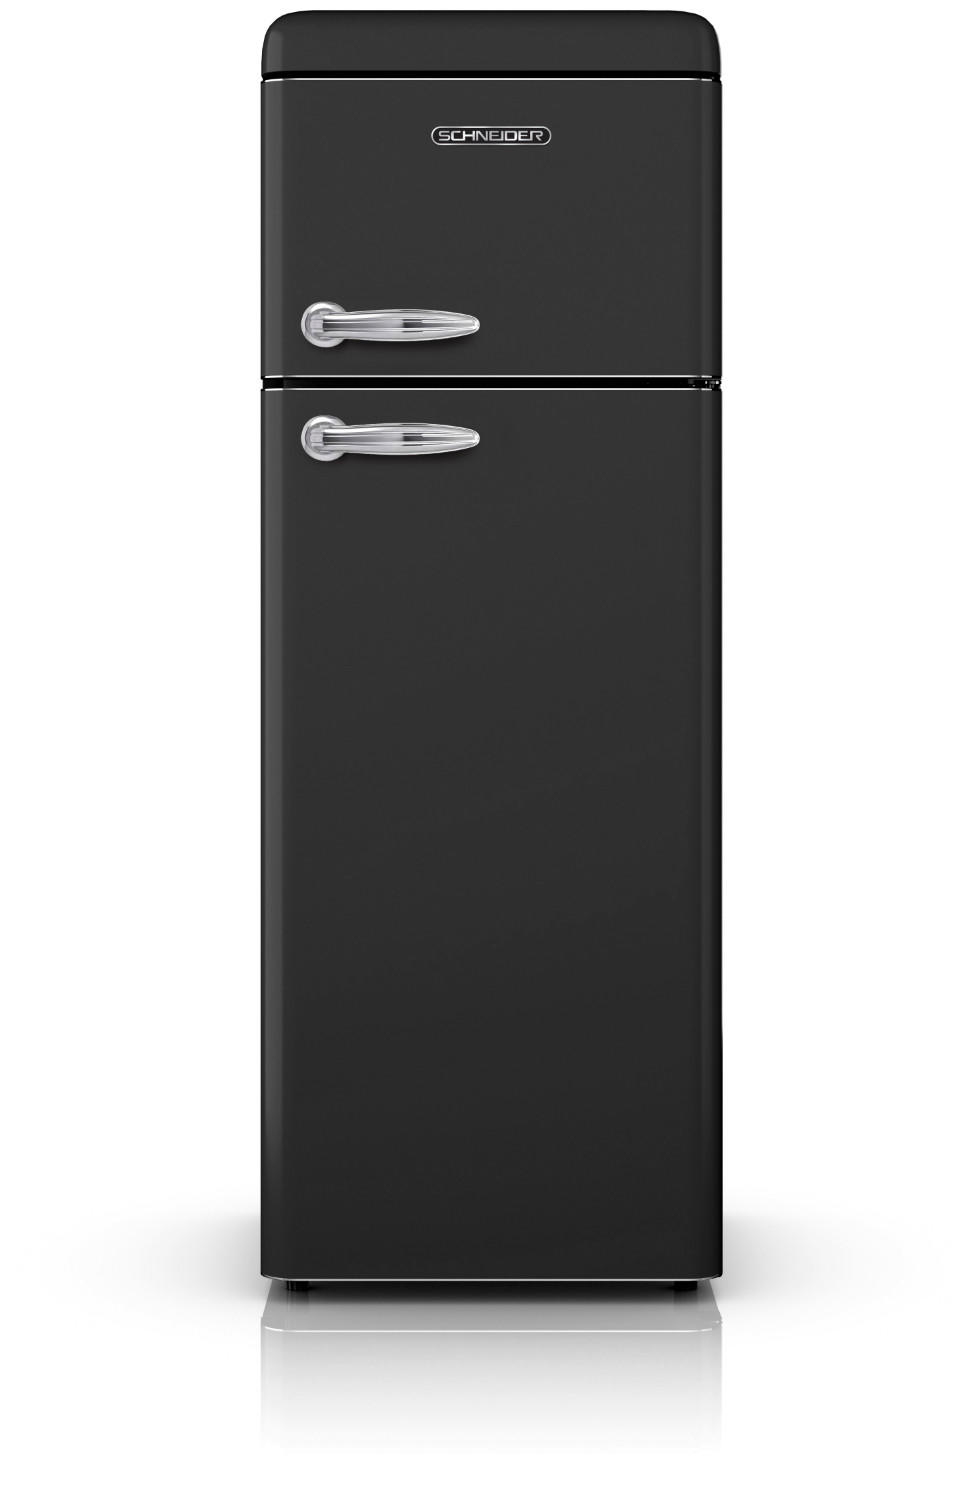 Vintage refrigerator with 2 doors in black 208L - Schneider